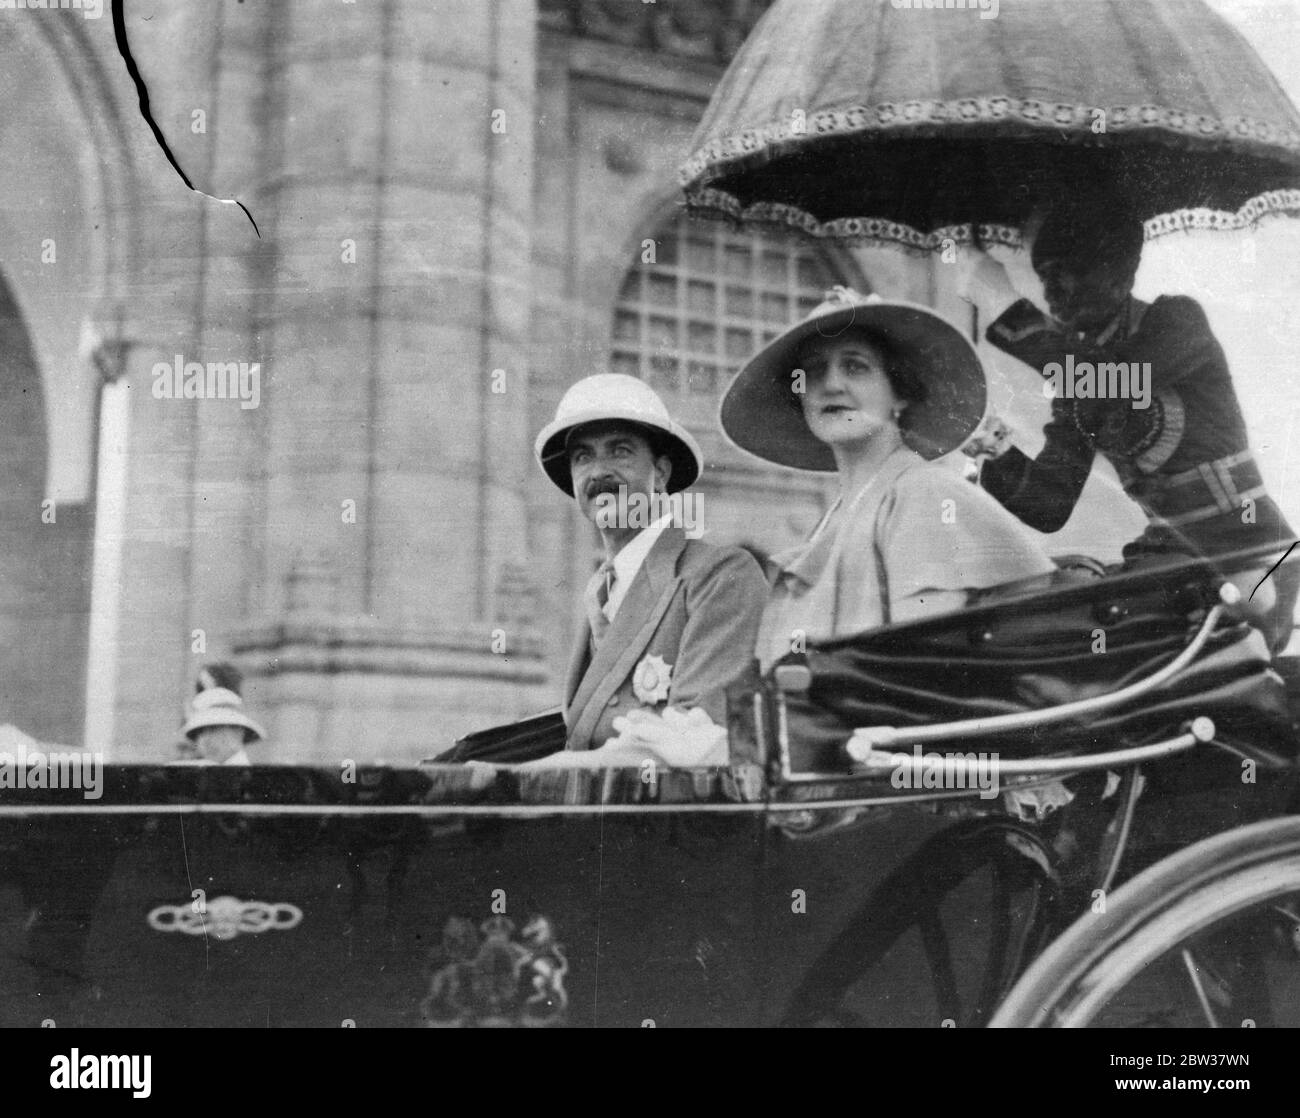 Le nouveau gouverneur arrive à Bombay . Lord Brabourne , le Nouveau Gouverneur de Bombay , est arrivé avec Lady Brabourne , pour prendre rendez-vous . Photos ; Lord et Lady Brabourne en voiture à Bombay à l'arrivée . 19 décembre 1933 Banque D'Images